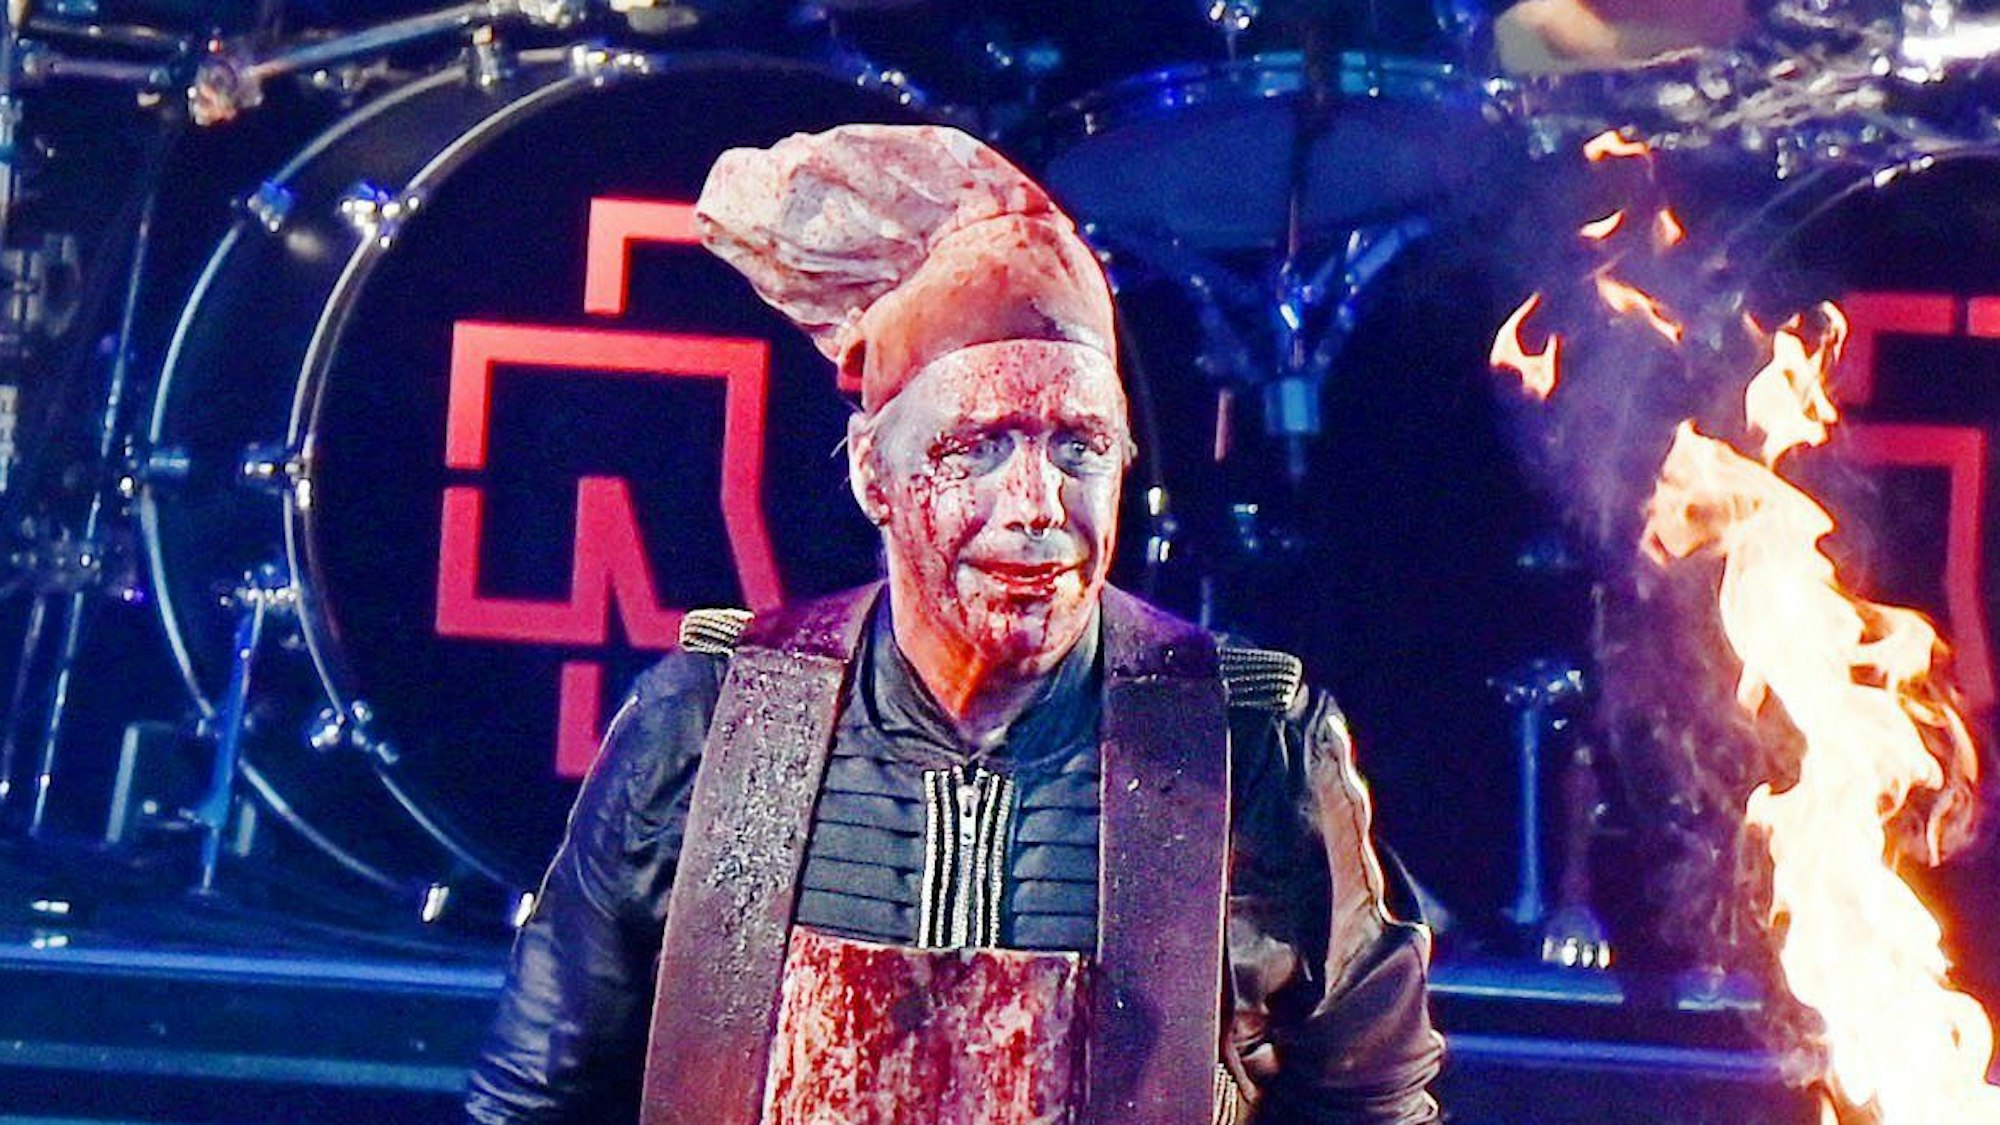 Rammstein Frontsänger Till Lindemann performt den Song «MeinTeil» auf der Bühne.